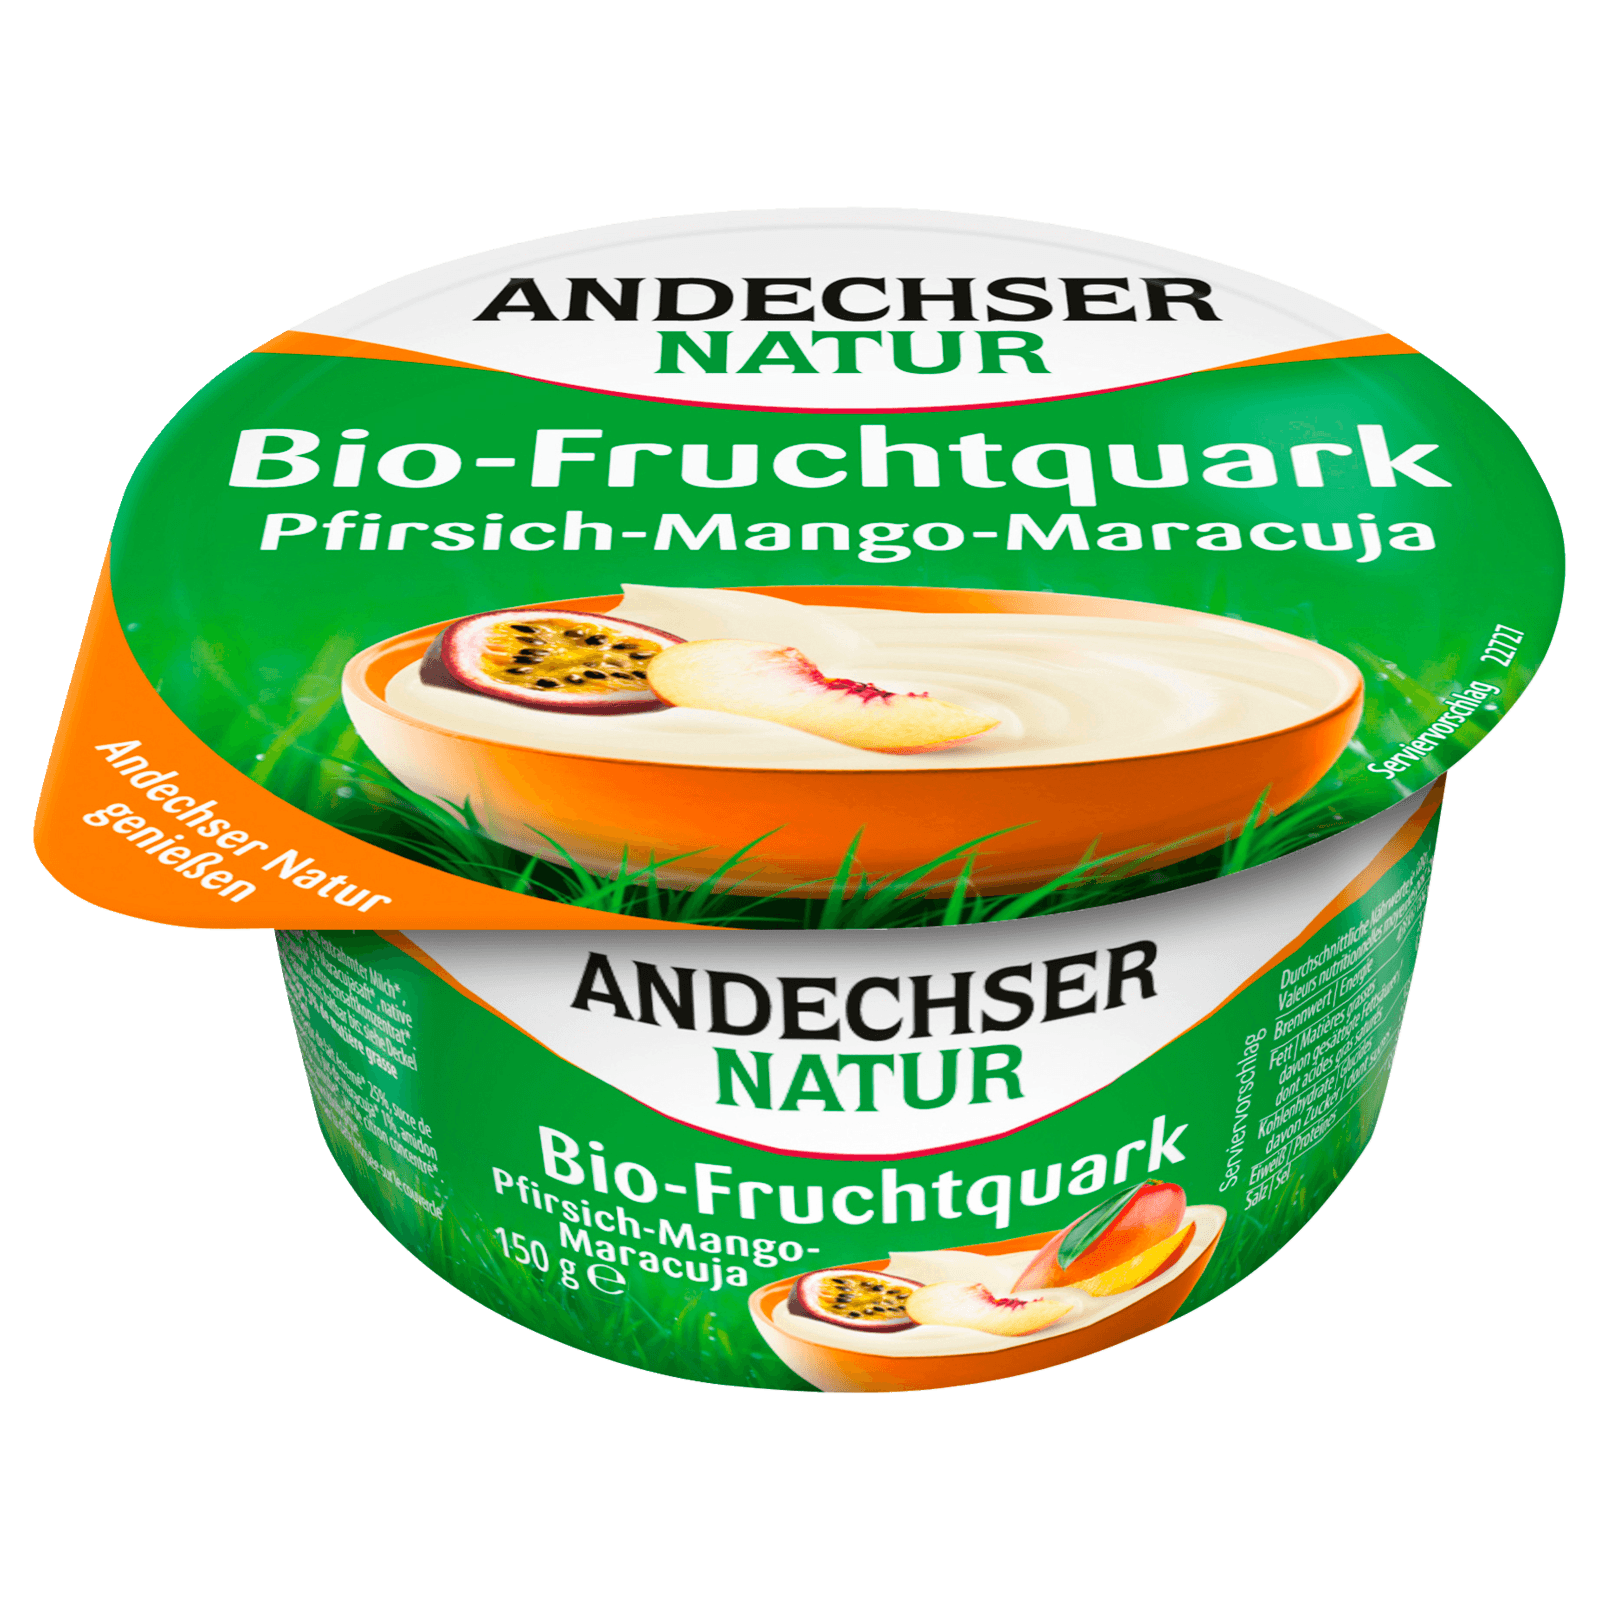 Andechser Natur Bio-Fruchtquark Pfirsich-Mango-Maracuja 20% 150g bei ...